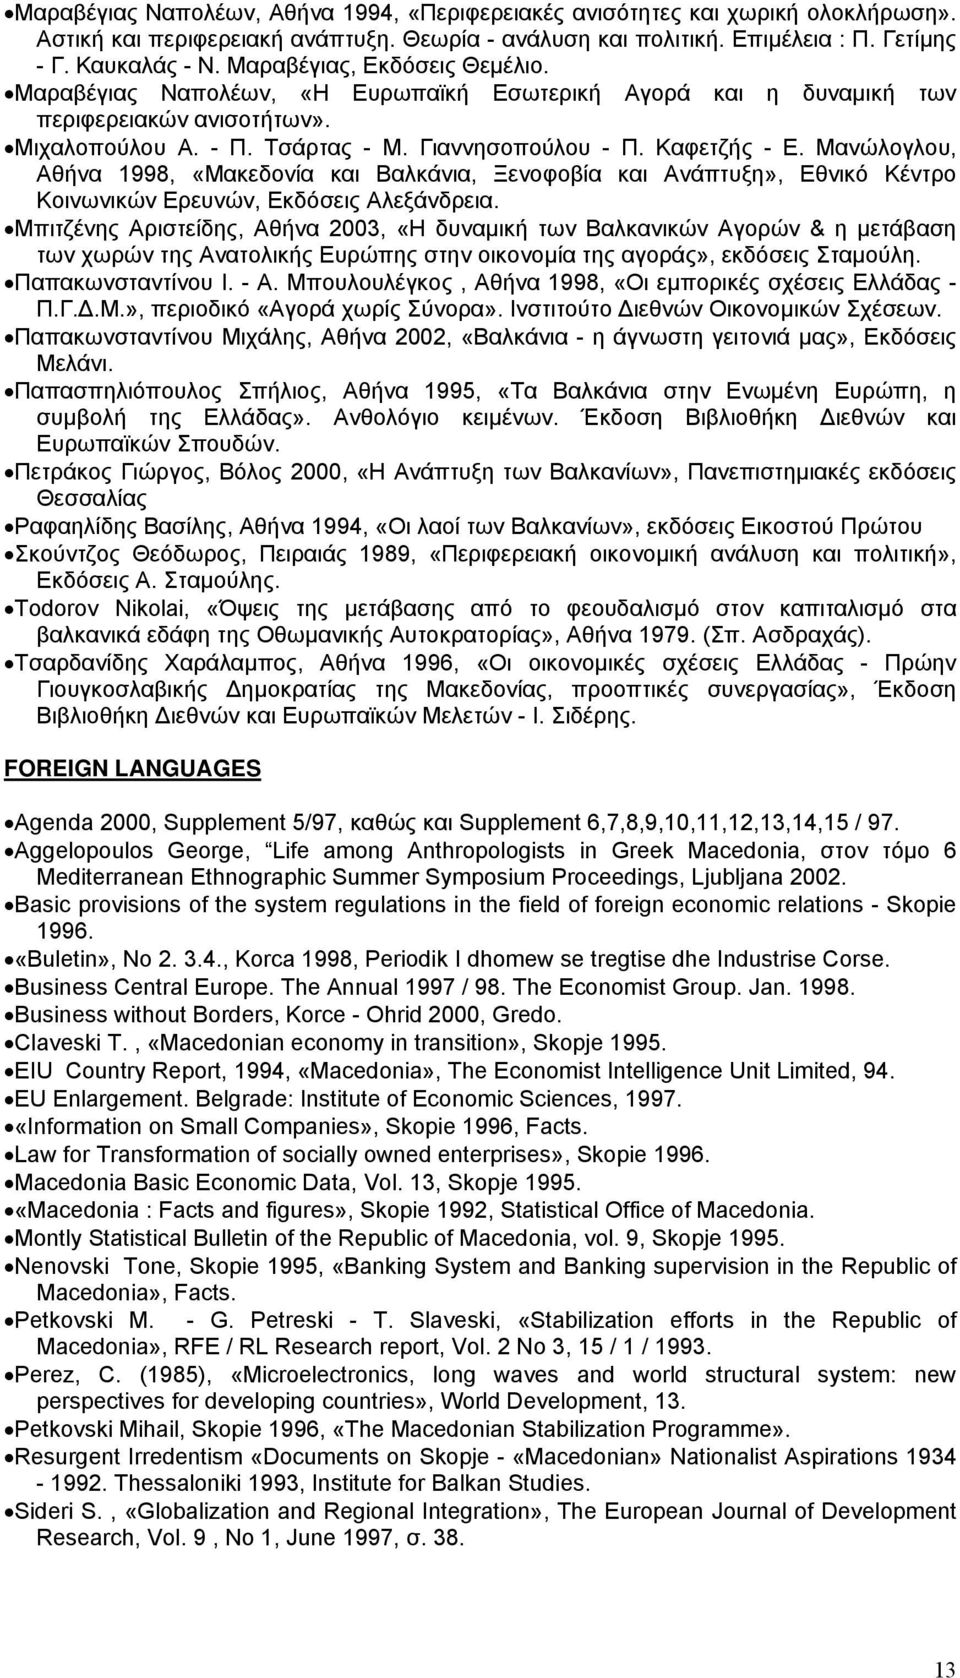 Μανώλογλου, Αθήνα 1998, «Μακεδονία και Βαλκάνια, Ξενοφοβία και Ανάπτυξη», Εθνικό Κέντρο Κοινωνικών Ερευνών, Εκδόσεις Αλεξάνδρεια.